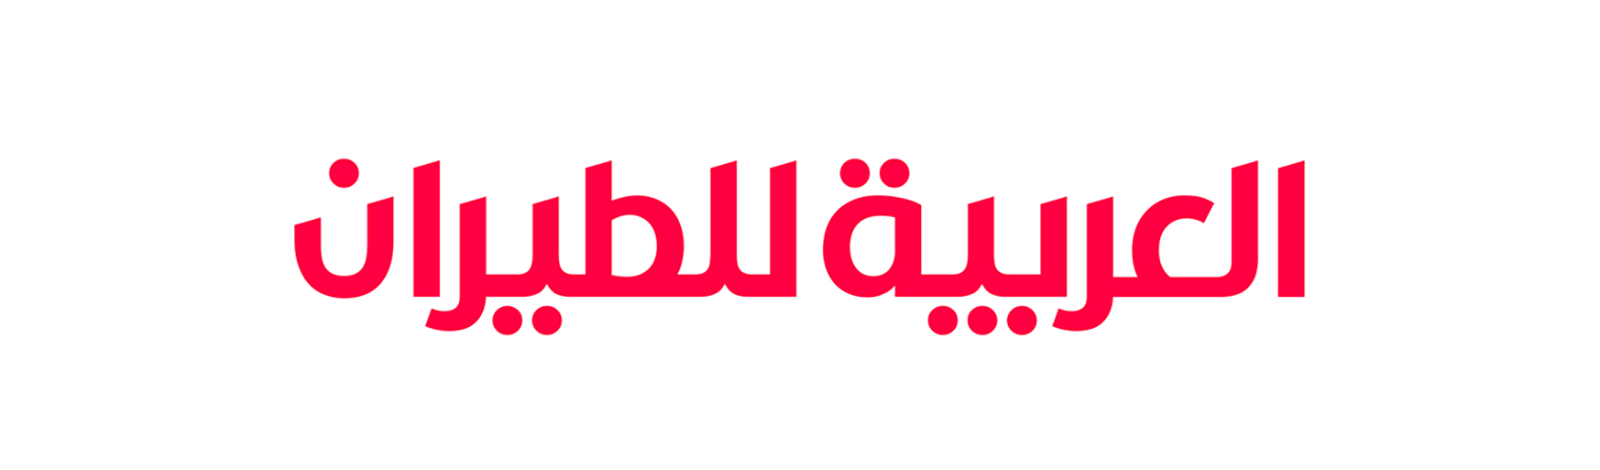 阿拉伯航空公司发布全新的logo和VI识别形象系统设计-深圳vi设计2